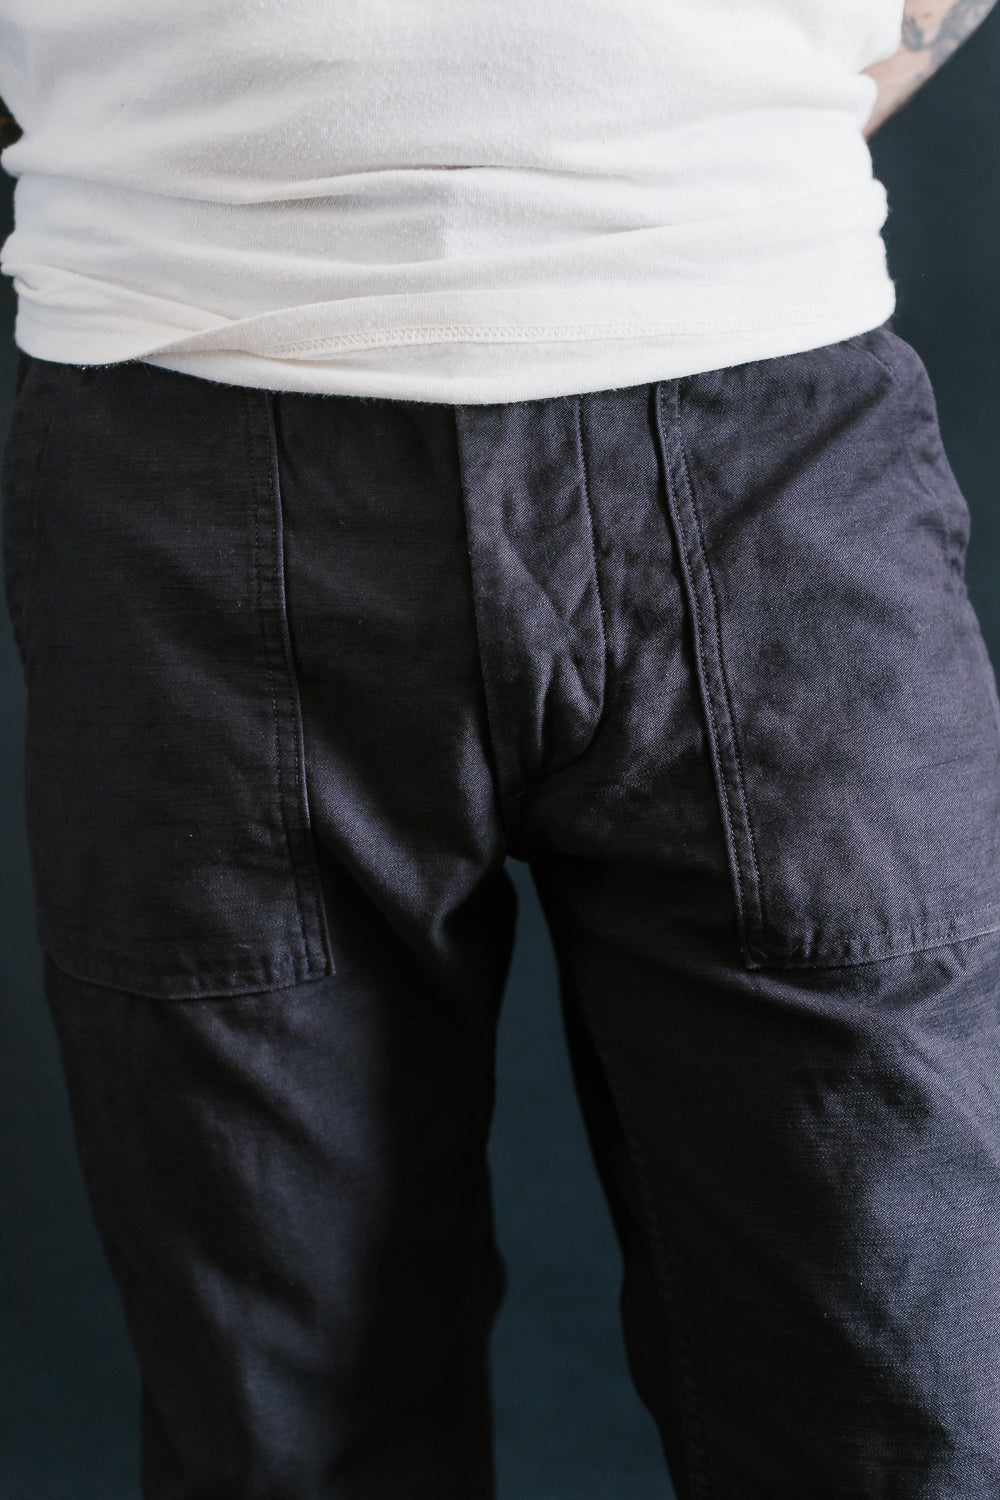 01-5032-61S - Fatigue Pants Reverse Sateen - Slim Fit - Black